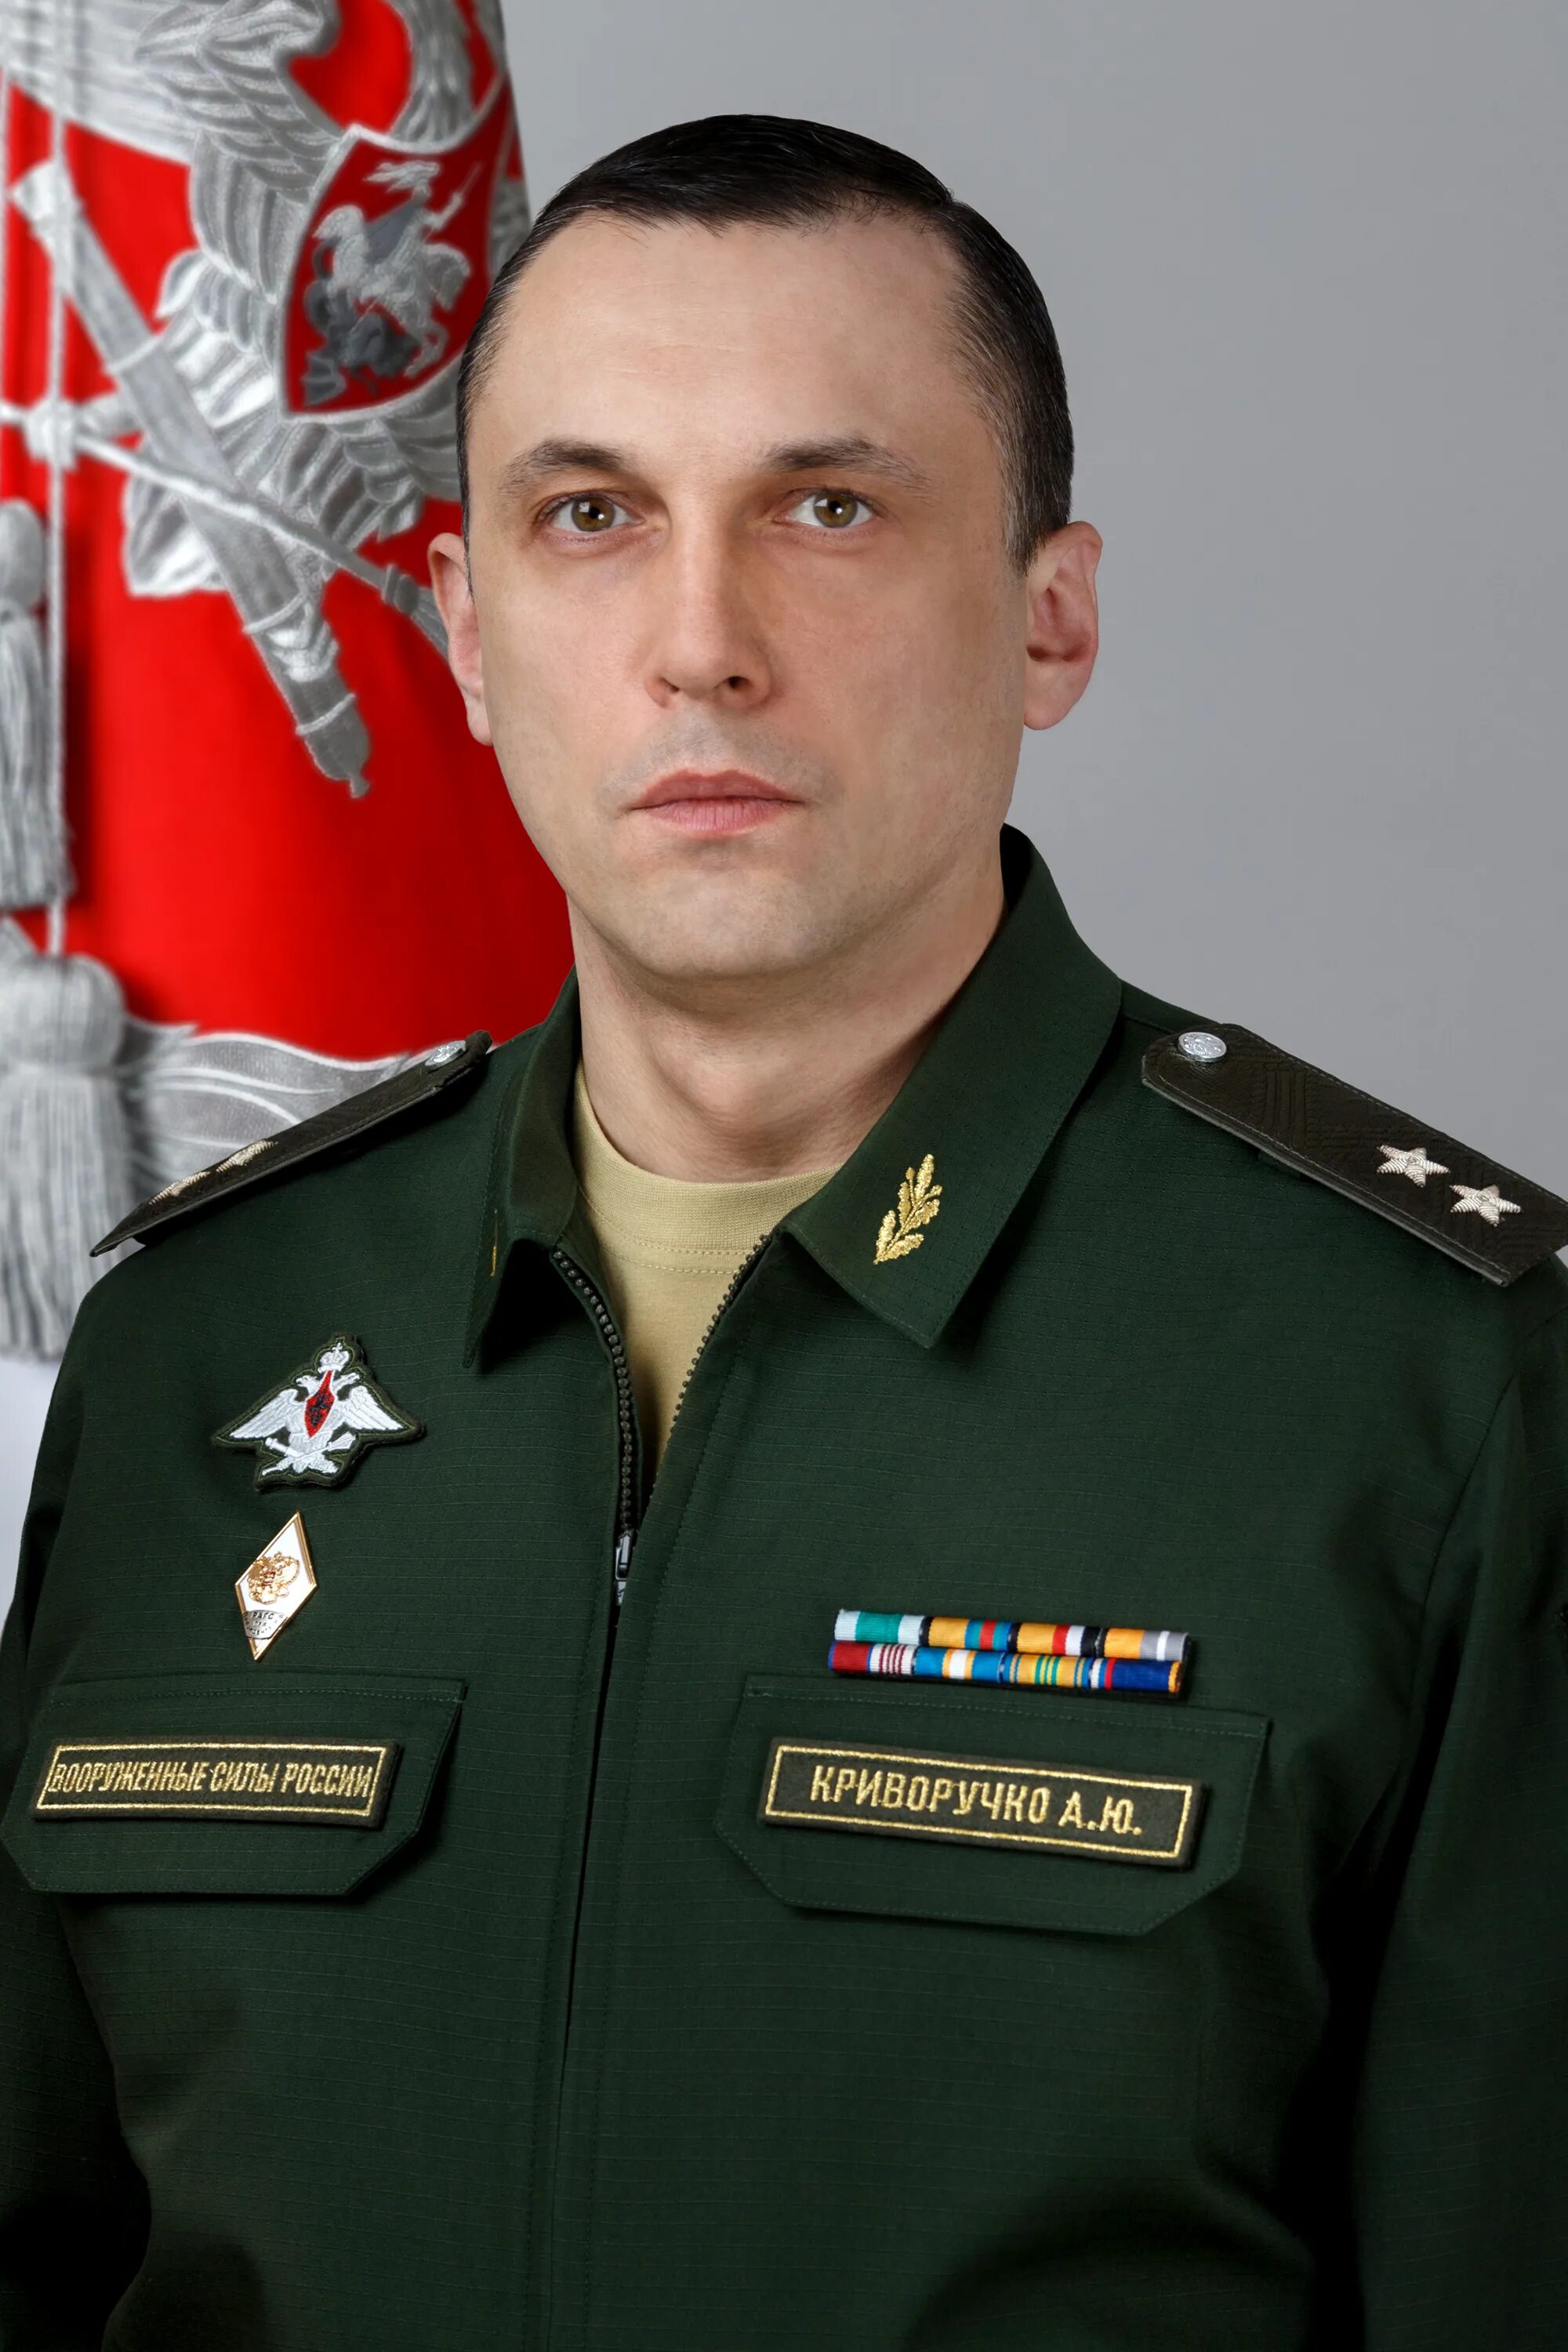 Сайт змо. Криворучко зам министра обороны РФ.